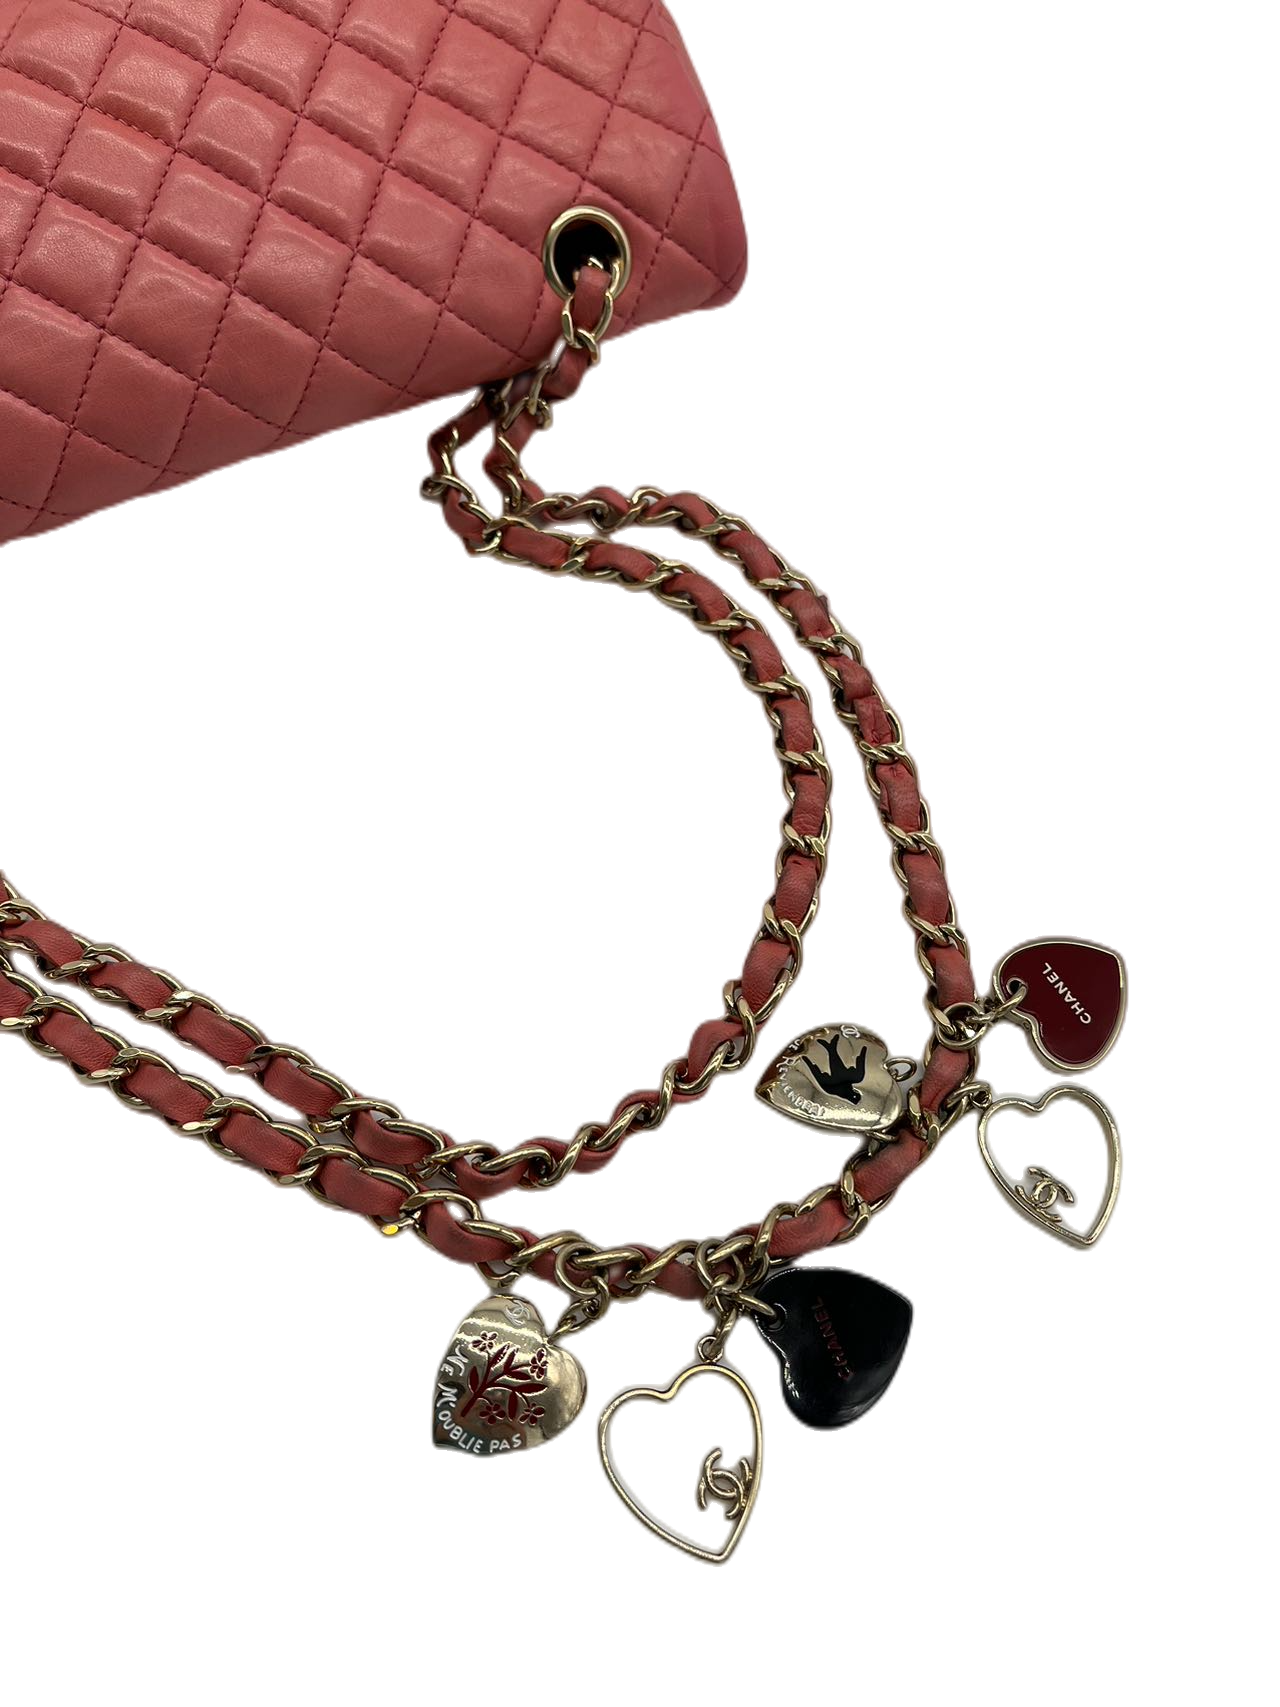 Preloved Chanel Timeless Classic Valentine Flap Shoulder Bag